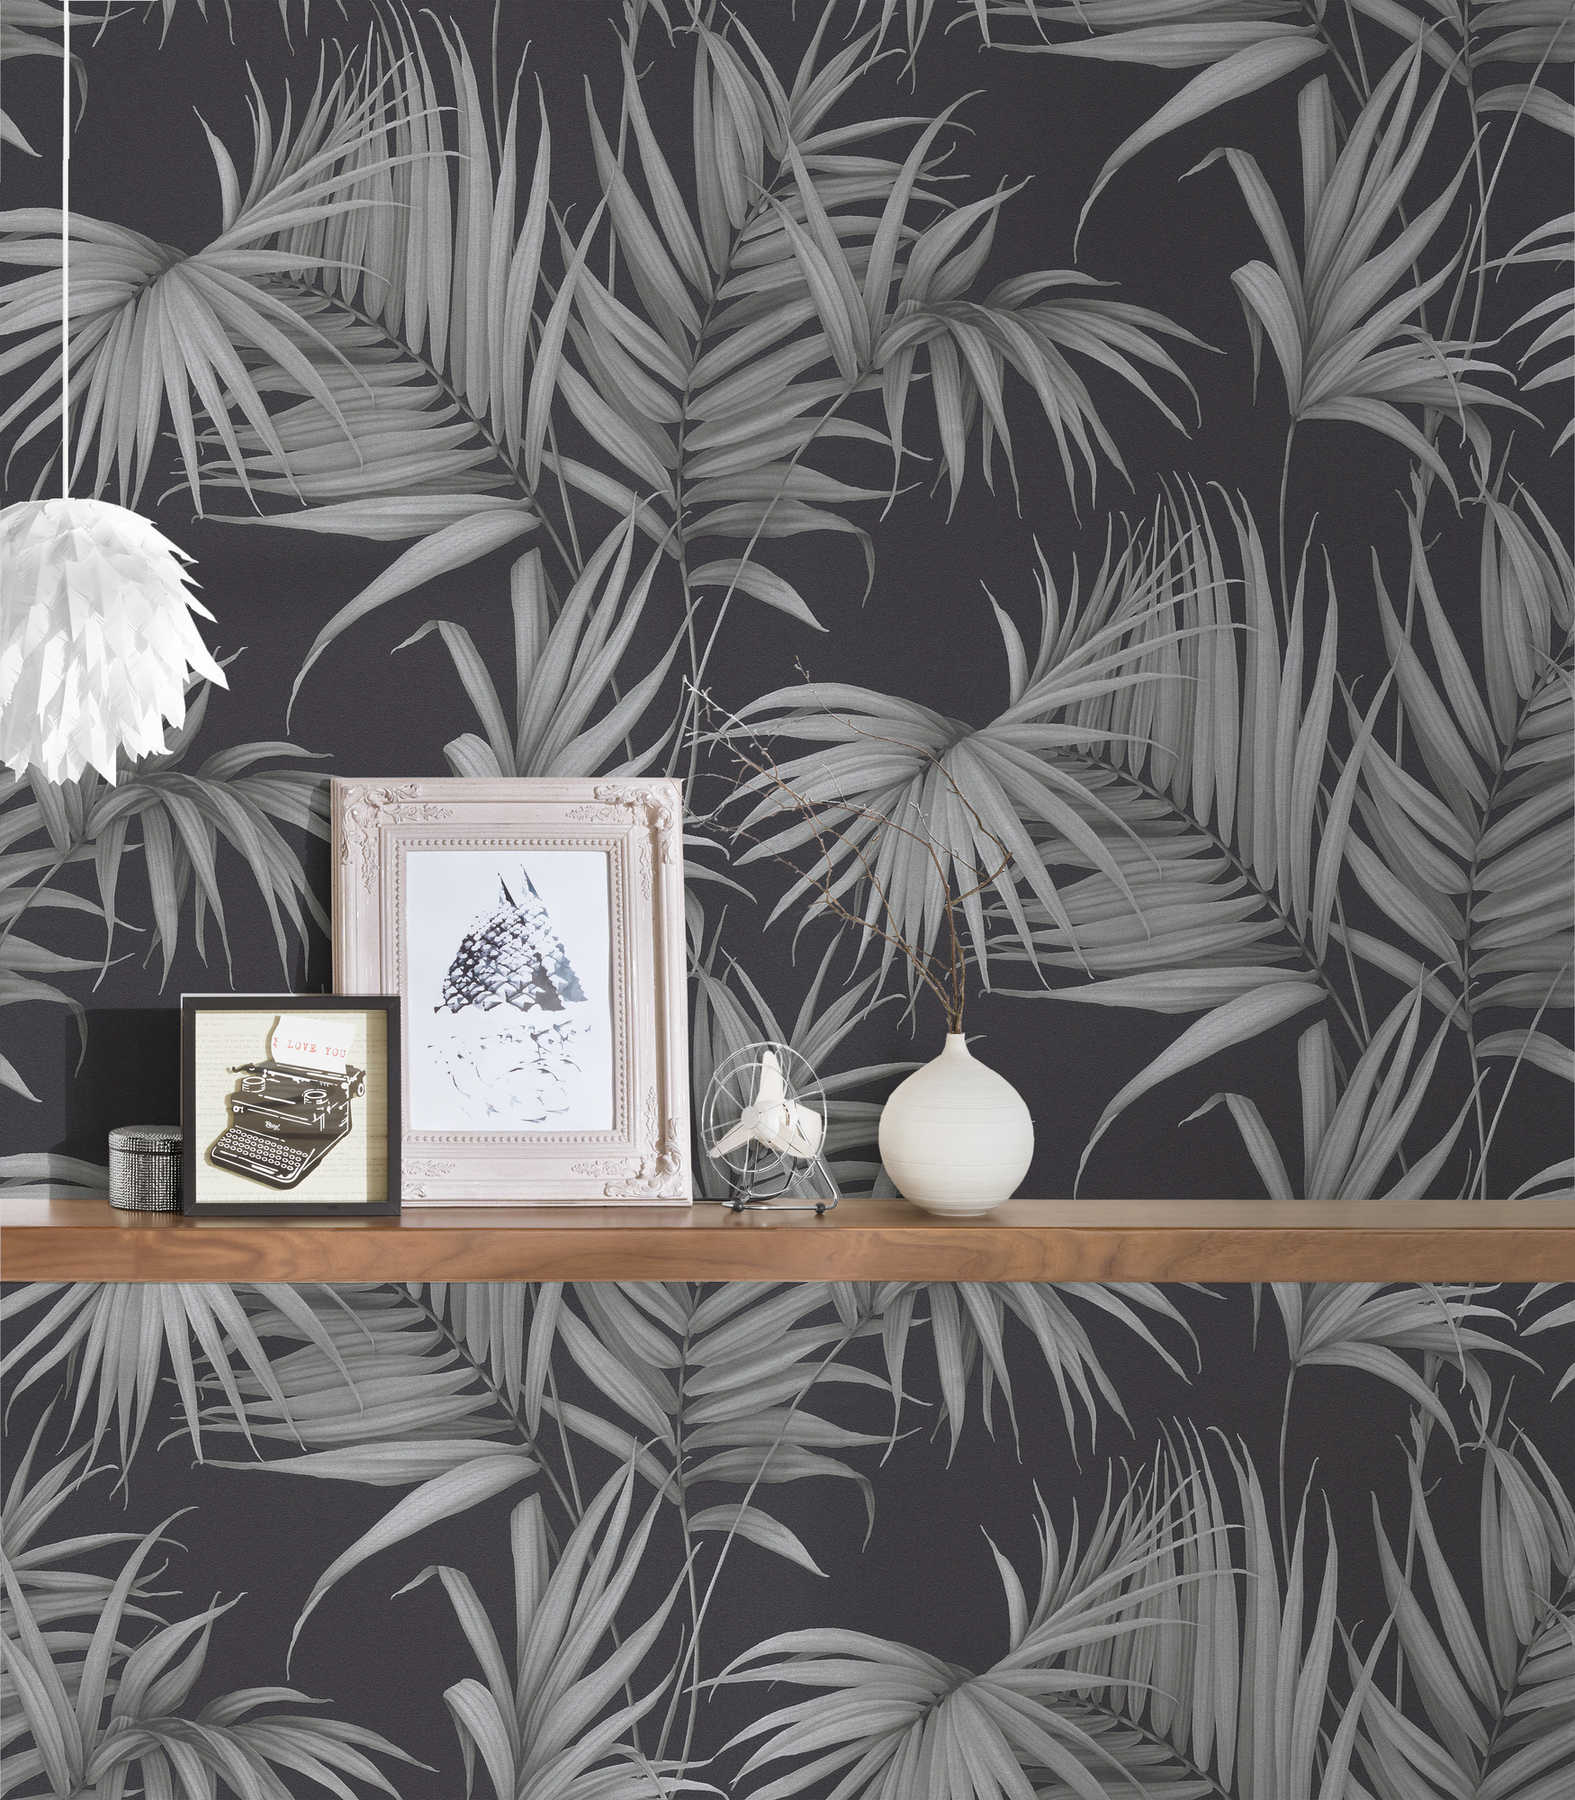             Papier peint tropical avec feuilles de fougères - gris, noir
        